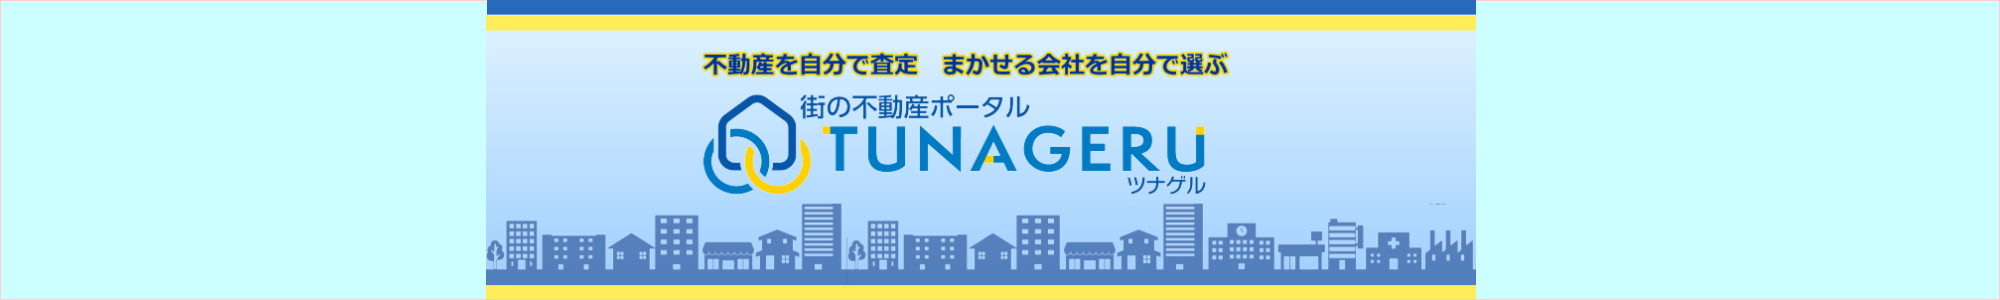 不動産を自分で査定 、まかせる会社を自分で選ぶ、街の不動産ポータル「TUNAGERU ツナゲル」